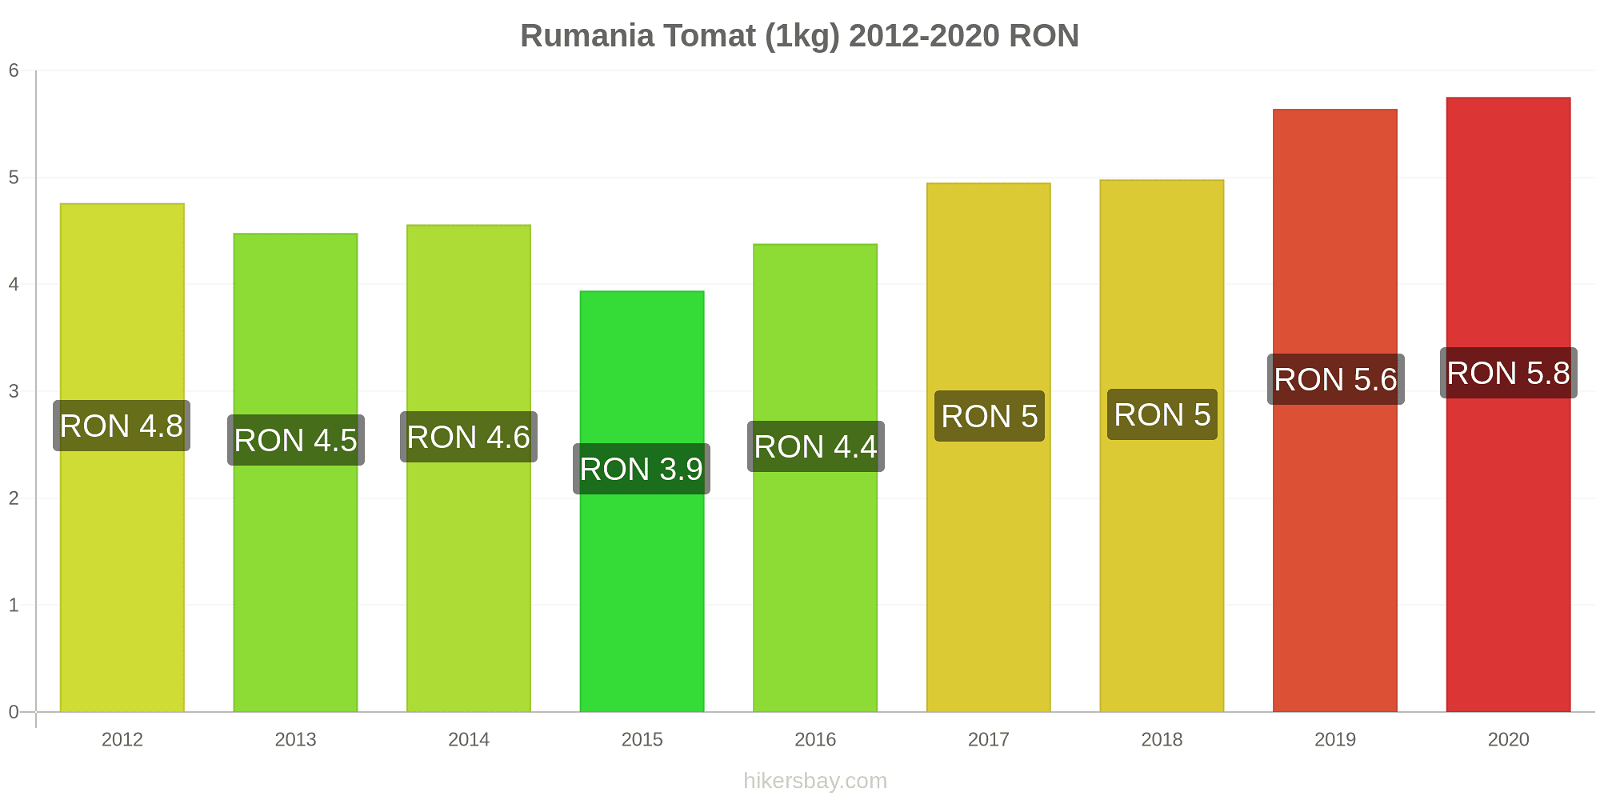 Rumania perubahan harga Tomat (1kg) hikersbay.com